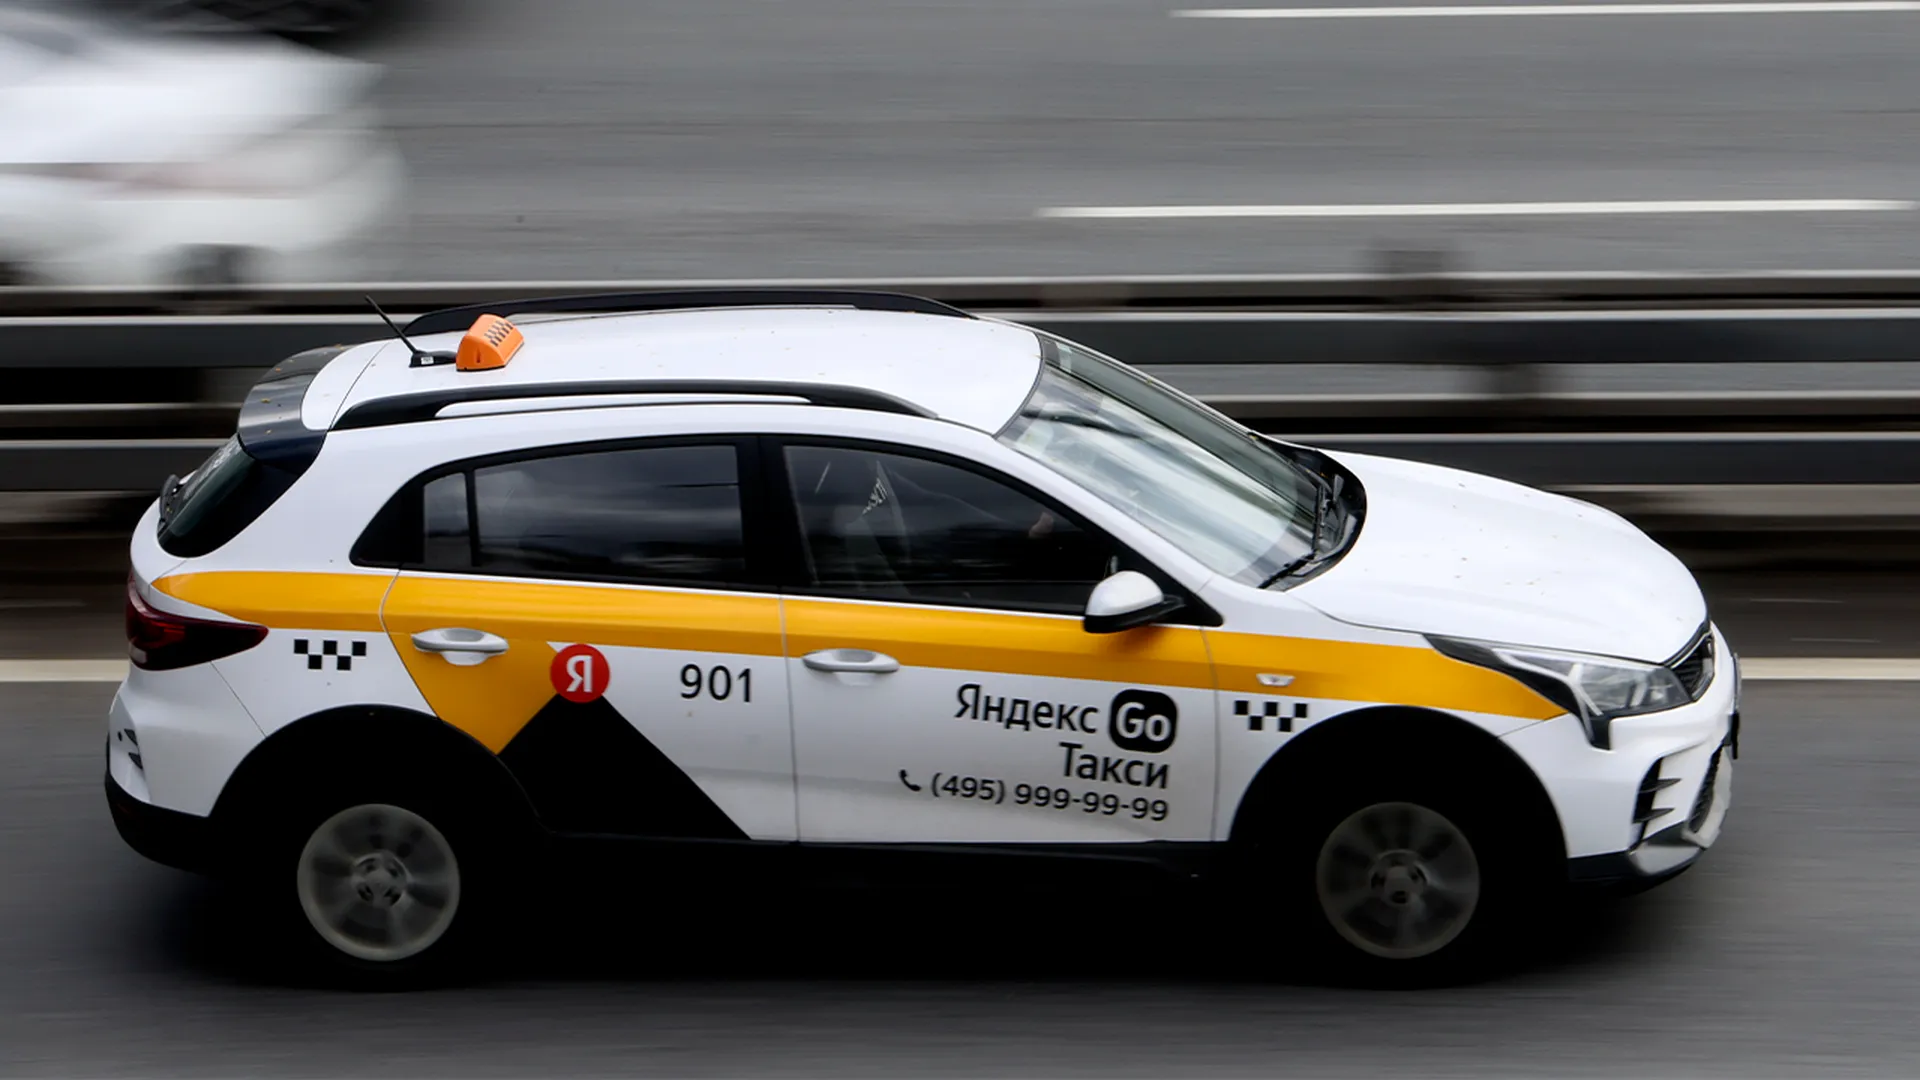 Водители такси в Москве пожаловались на падение заработка из-за сбоев GPS